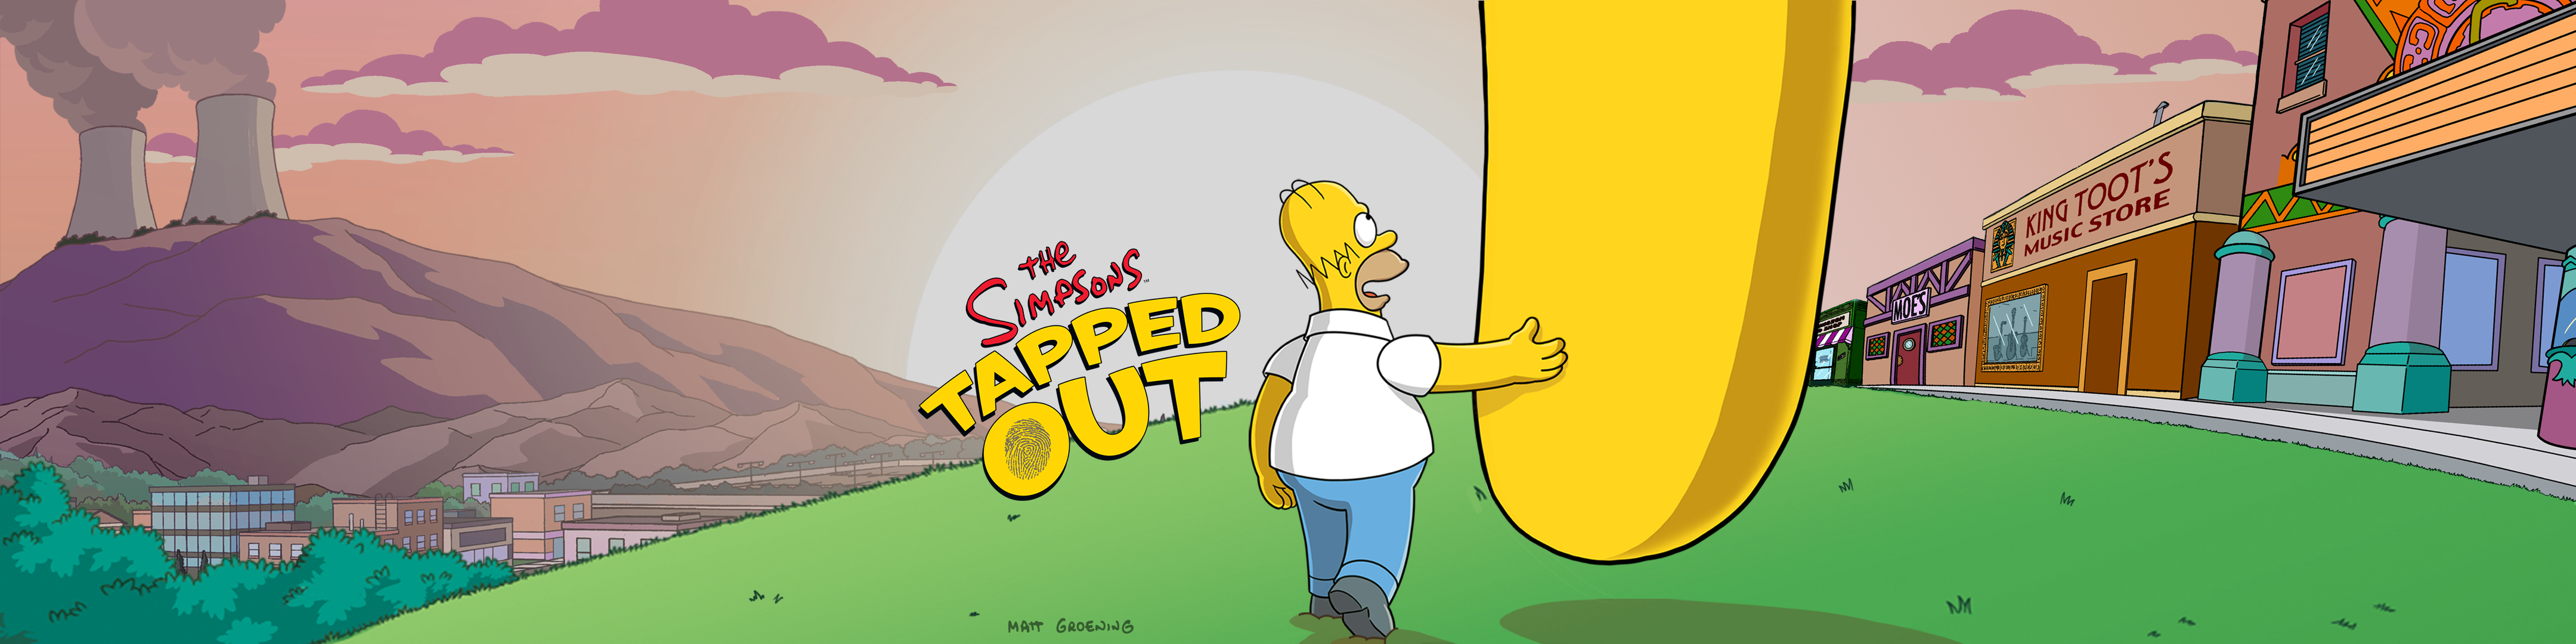 Los Simpson Springfield Revenue Download Estimates Apple